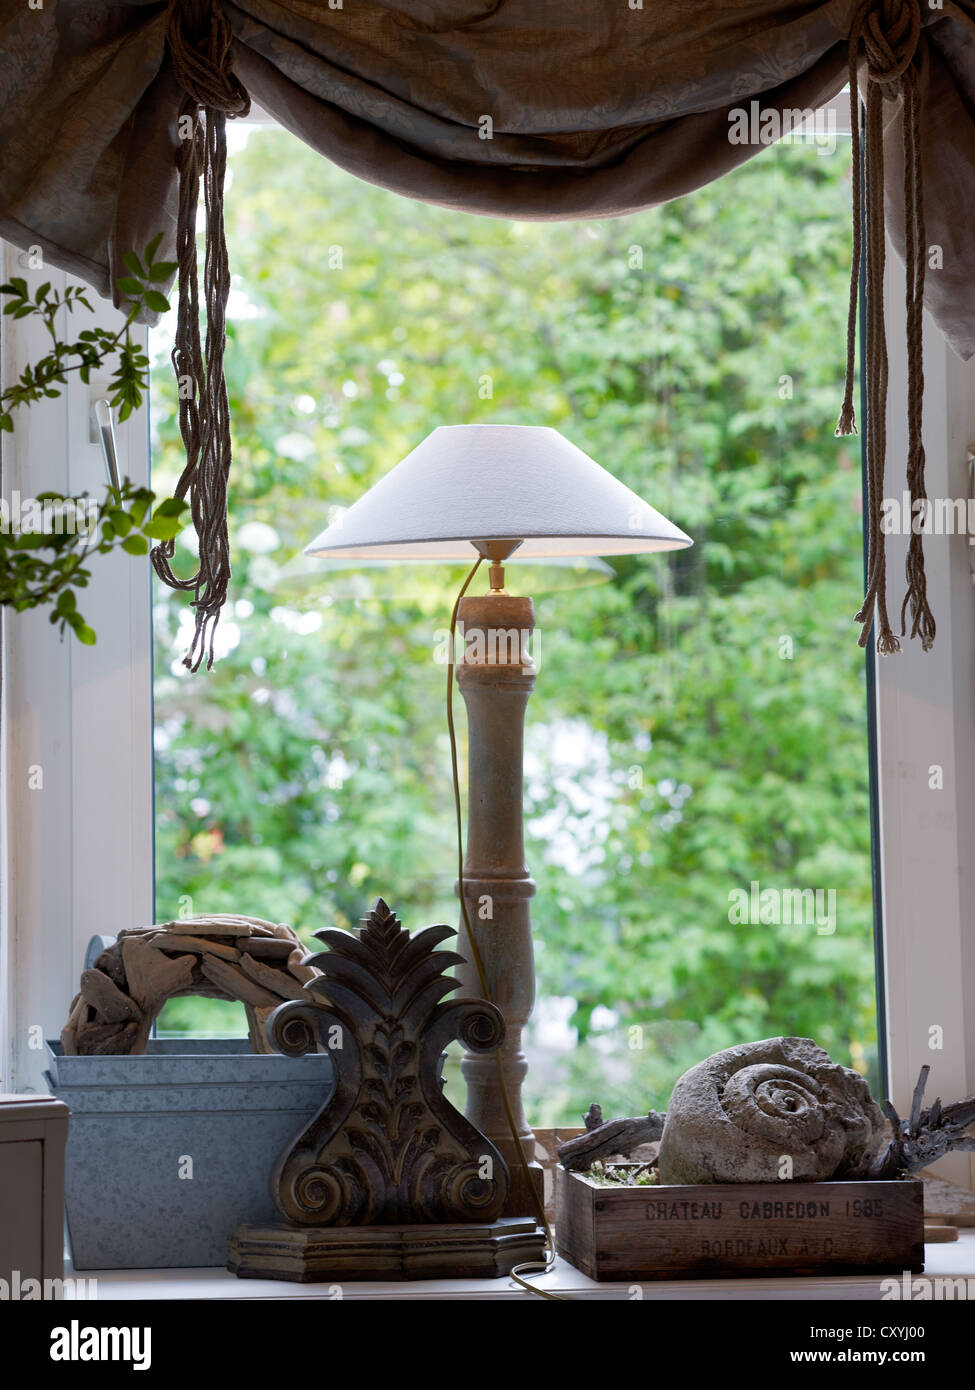 Still Life, fenêtre avec une lampe abat-jour et accessoires de décoration, de l'environnement élégant Banque D'Images